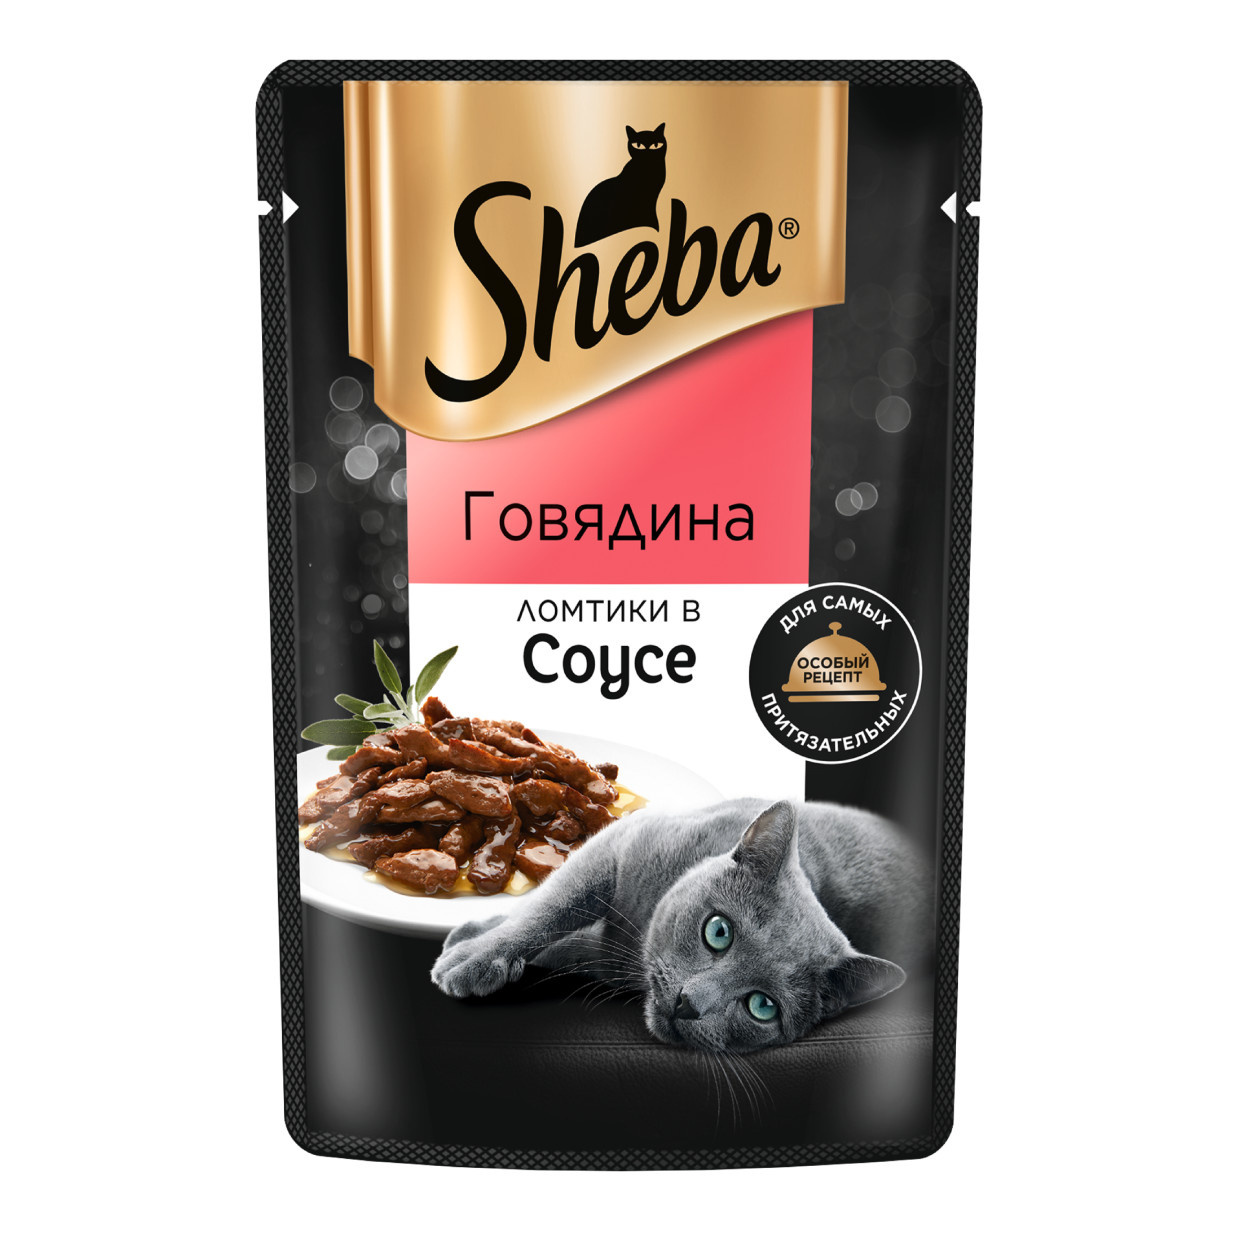 Sheba влажный корм для кошек «Ломтики в соусе с говядиной» (75 г) Sheba влажный корм для кошек «Ломтики в соусе с говядиной» (75 г) - фото 1